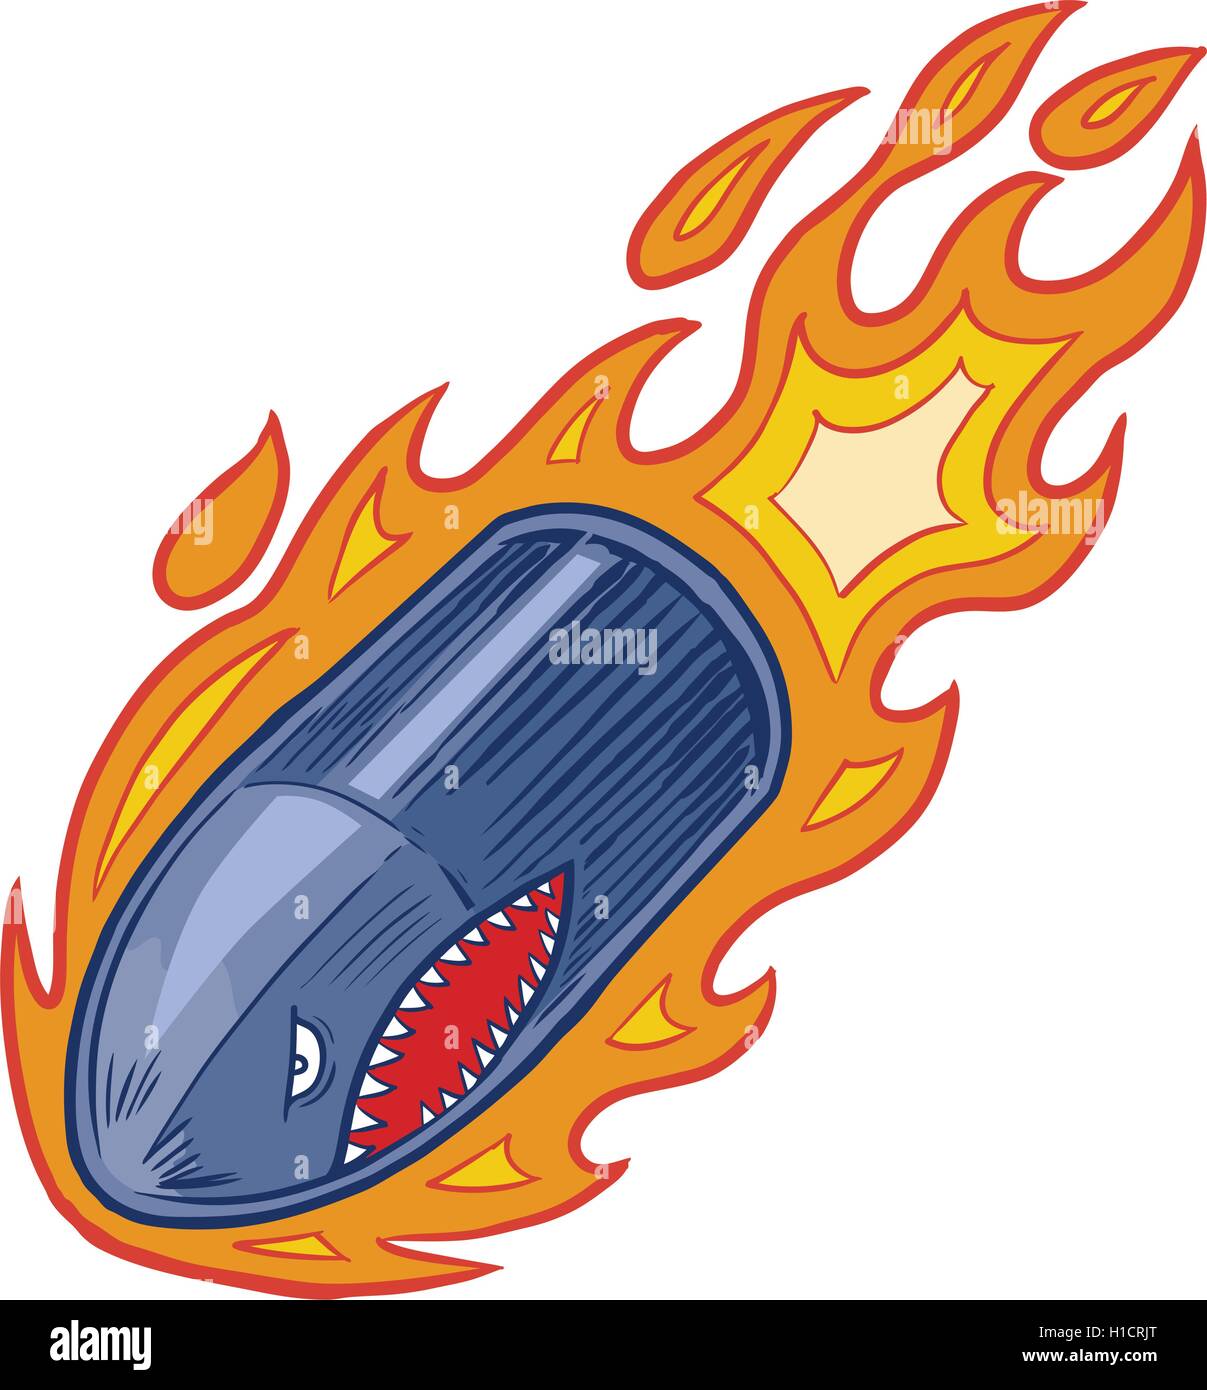 Vektor Cartoon-Clip Art Illustration eine böse Kugel oder Artillerie Shell-Maskottchen in Flammen mit einem Hai Mund Gesicht Stock Vektor